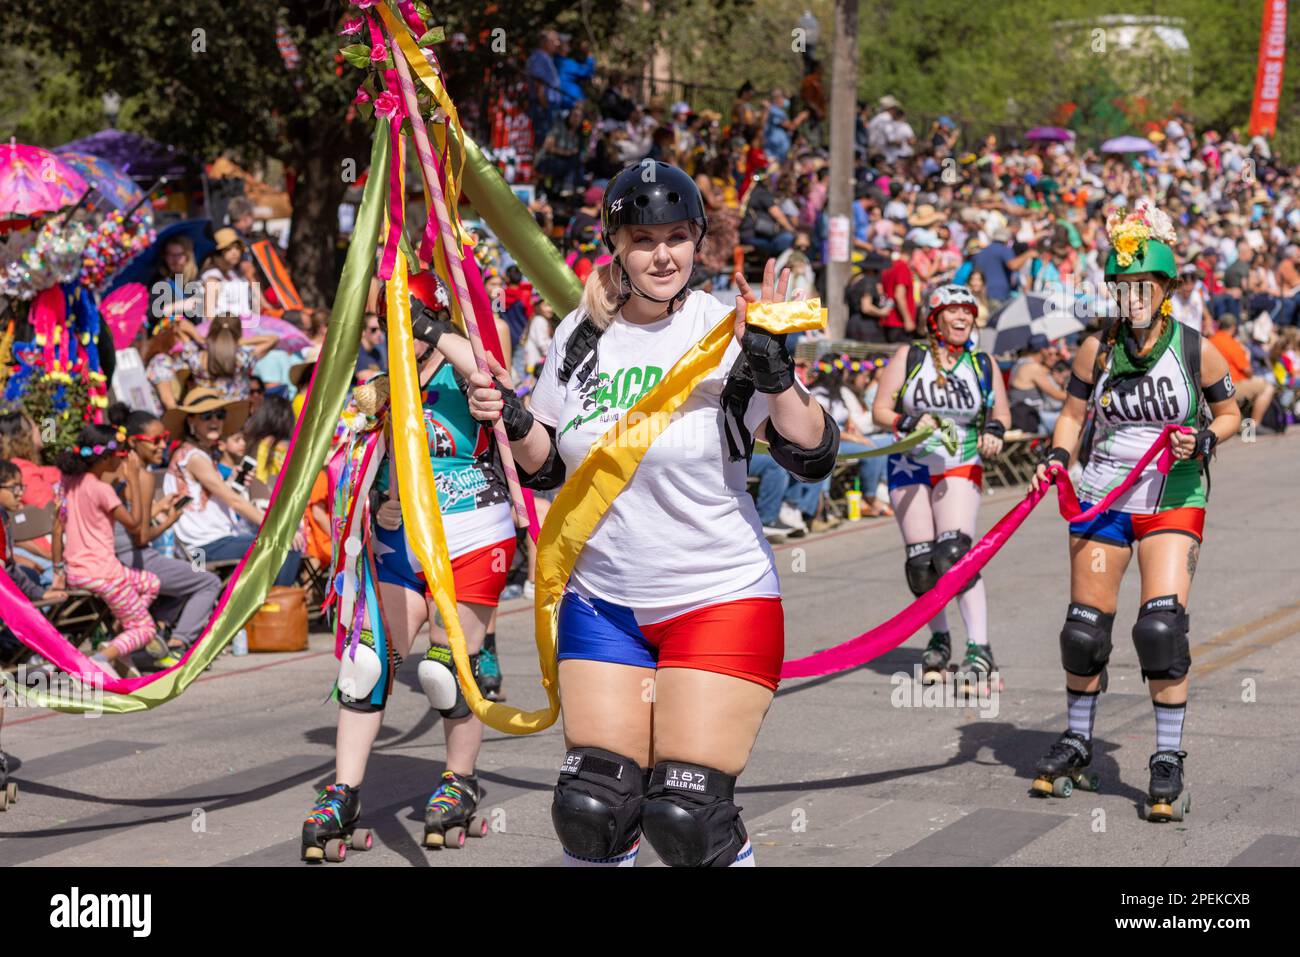 San Antonio, Texas, USA - 8 aprile 2022: La Battaglia dei Fiori Parade, membri delle Alamo City Roller Girls Foto Stock